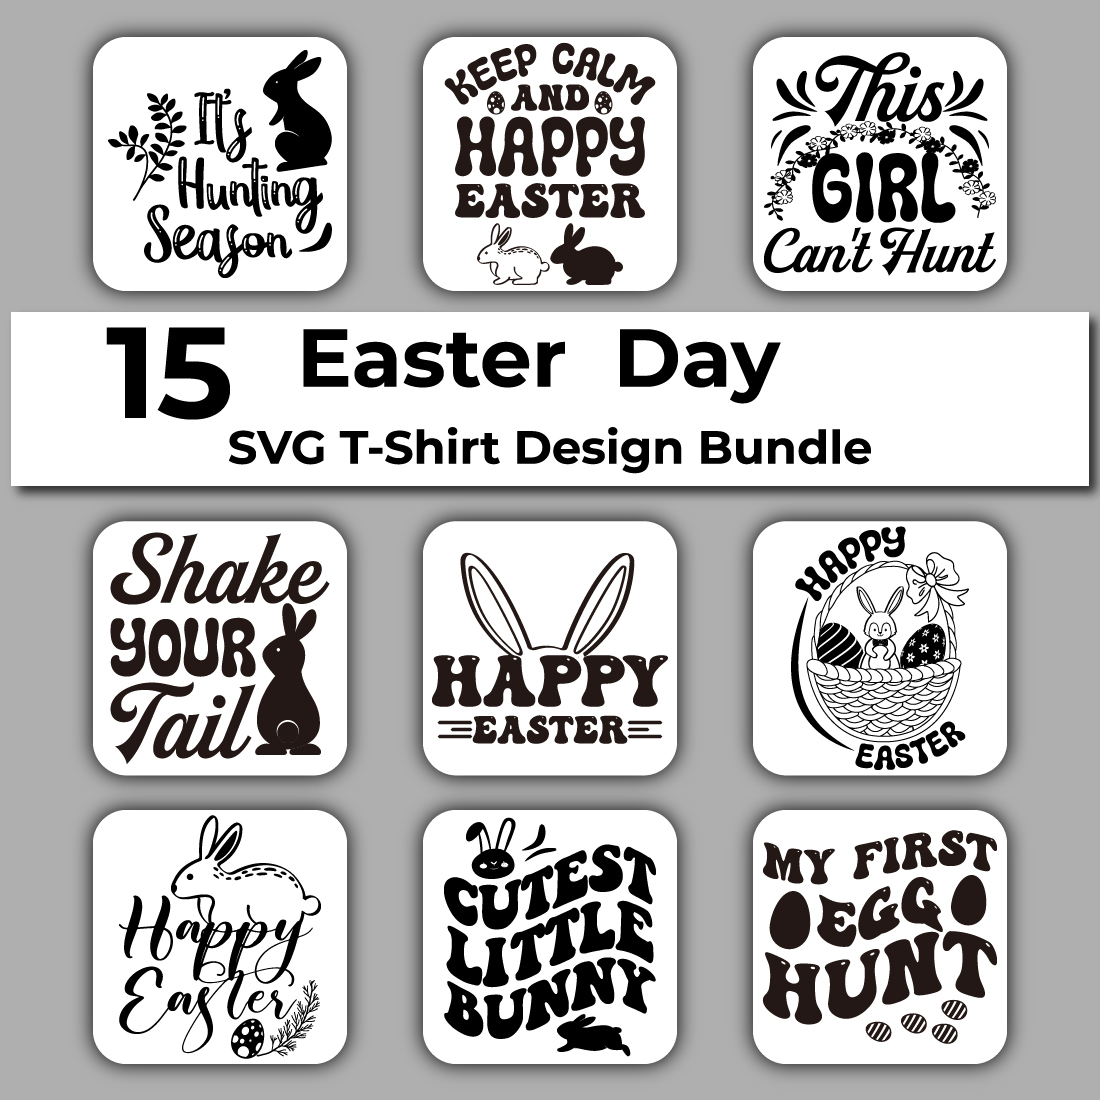 15 Easter SVG crafts design Bundle cover image.